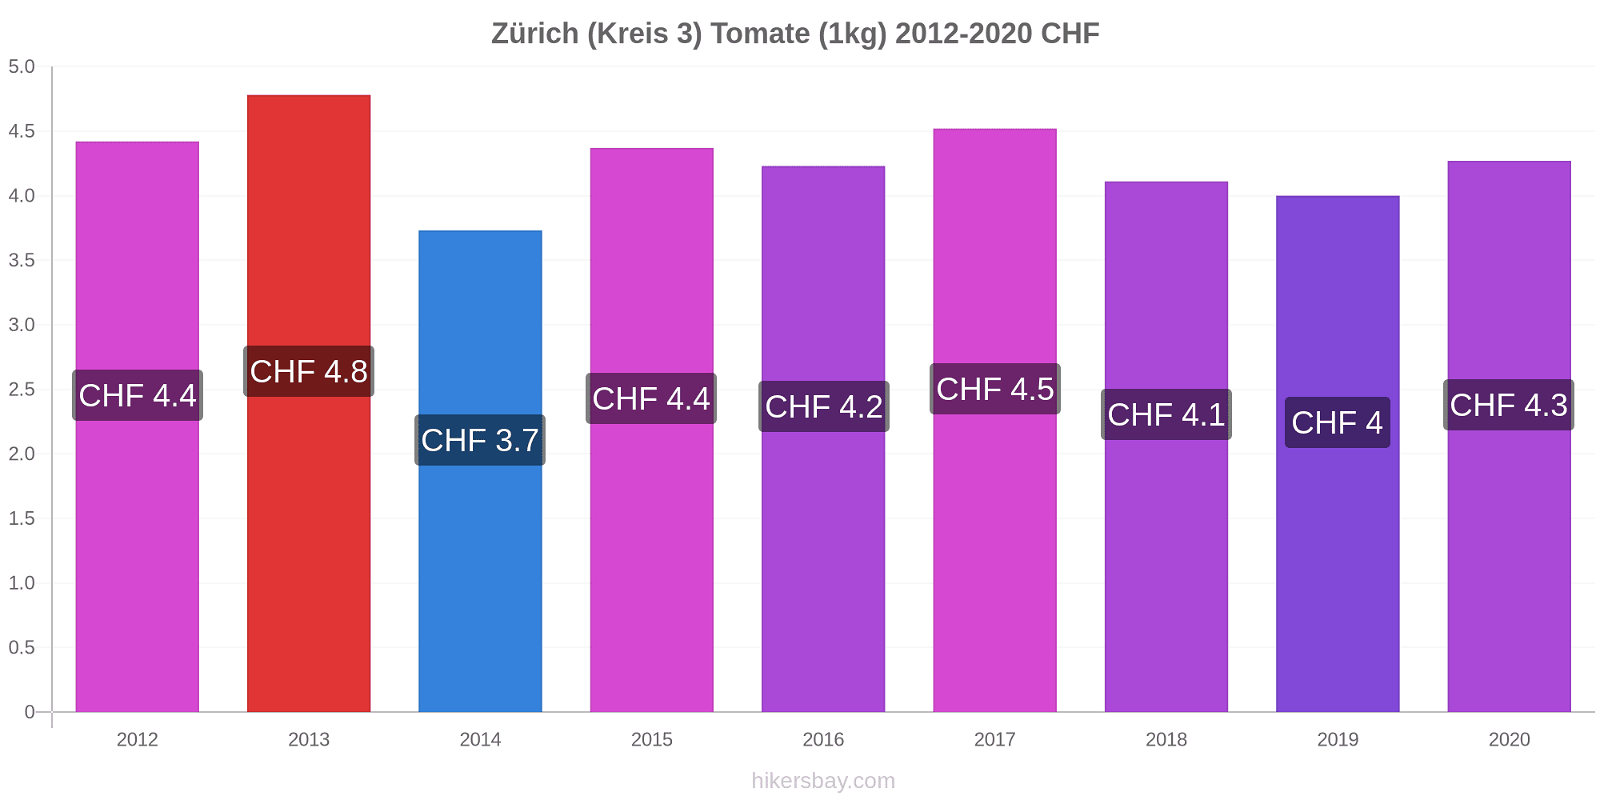 Zürich (Kreis 3) Preisänderungen Tomaten (1kg) hikersbay.com